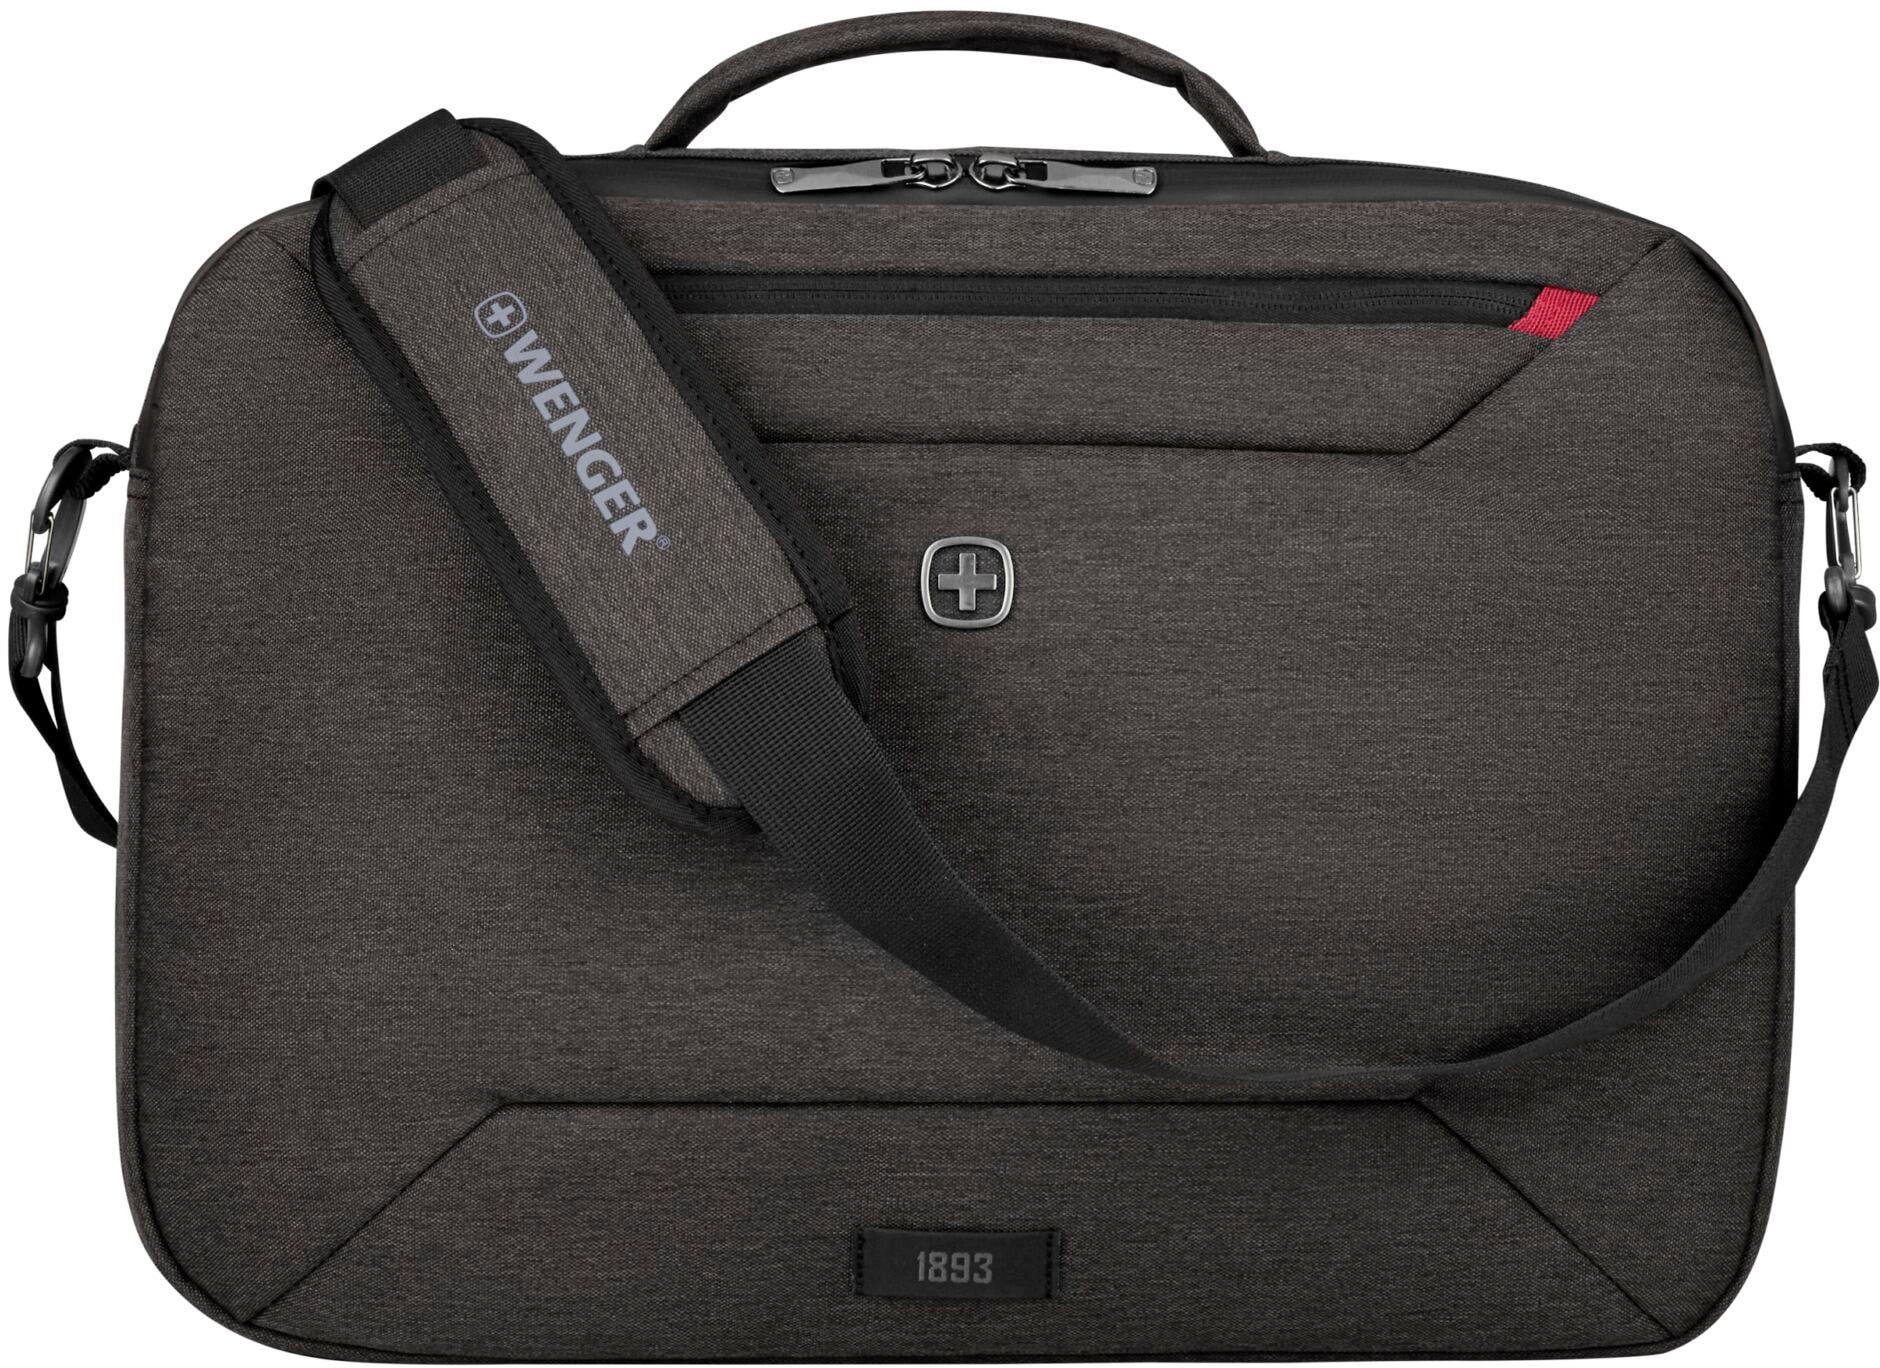 Laptoptasche »Commute, grau«, mit 16-Zoll Laptopfach, auch als Rucksack tragbar